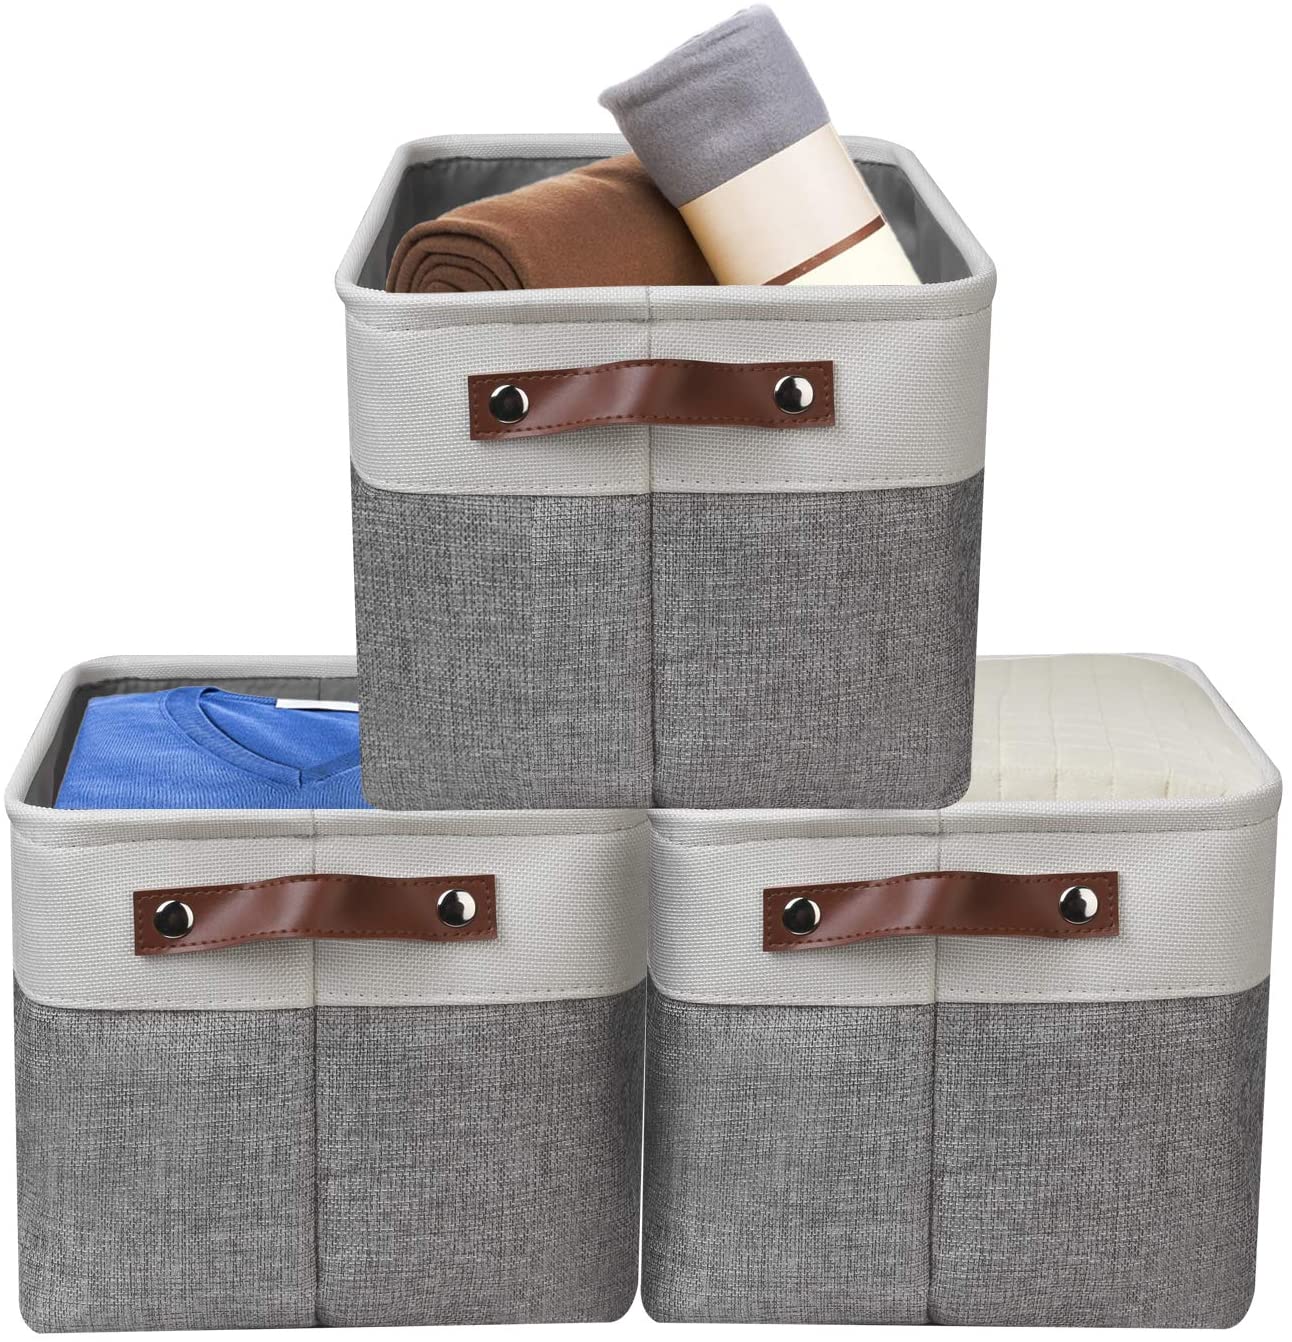 Awekris Foldable Storage Bag SetAwekris Large Storage Basket Bin Set